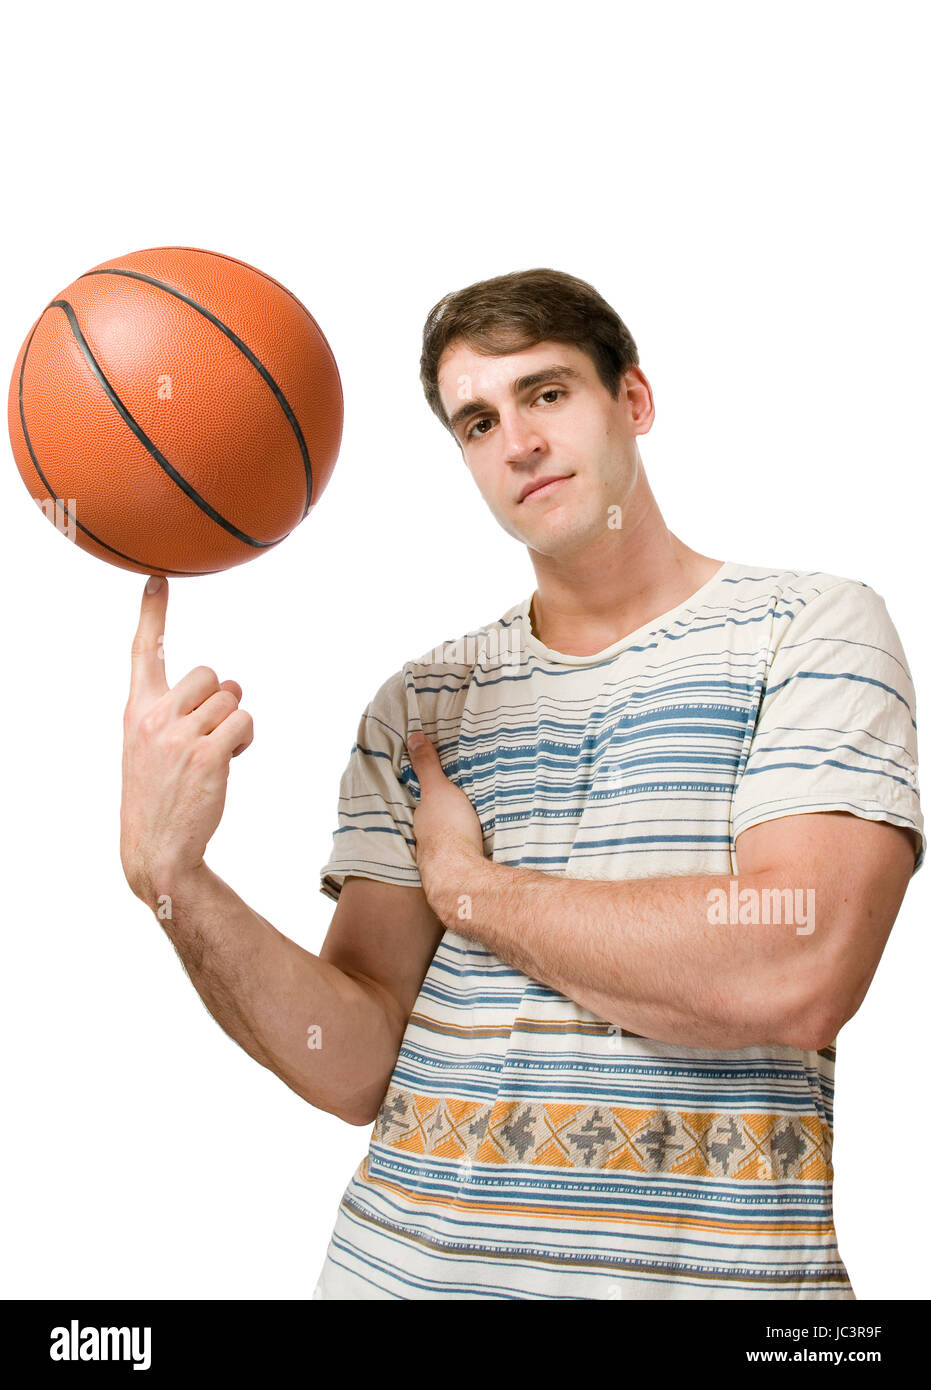 Oberkörper-Ansicht eines jungen Mannes im gestreiften T-Shirt weissen vor der Hintergrund und jonglierend Basket-ball cool dans Die Kamera blickend Banque D'Images